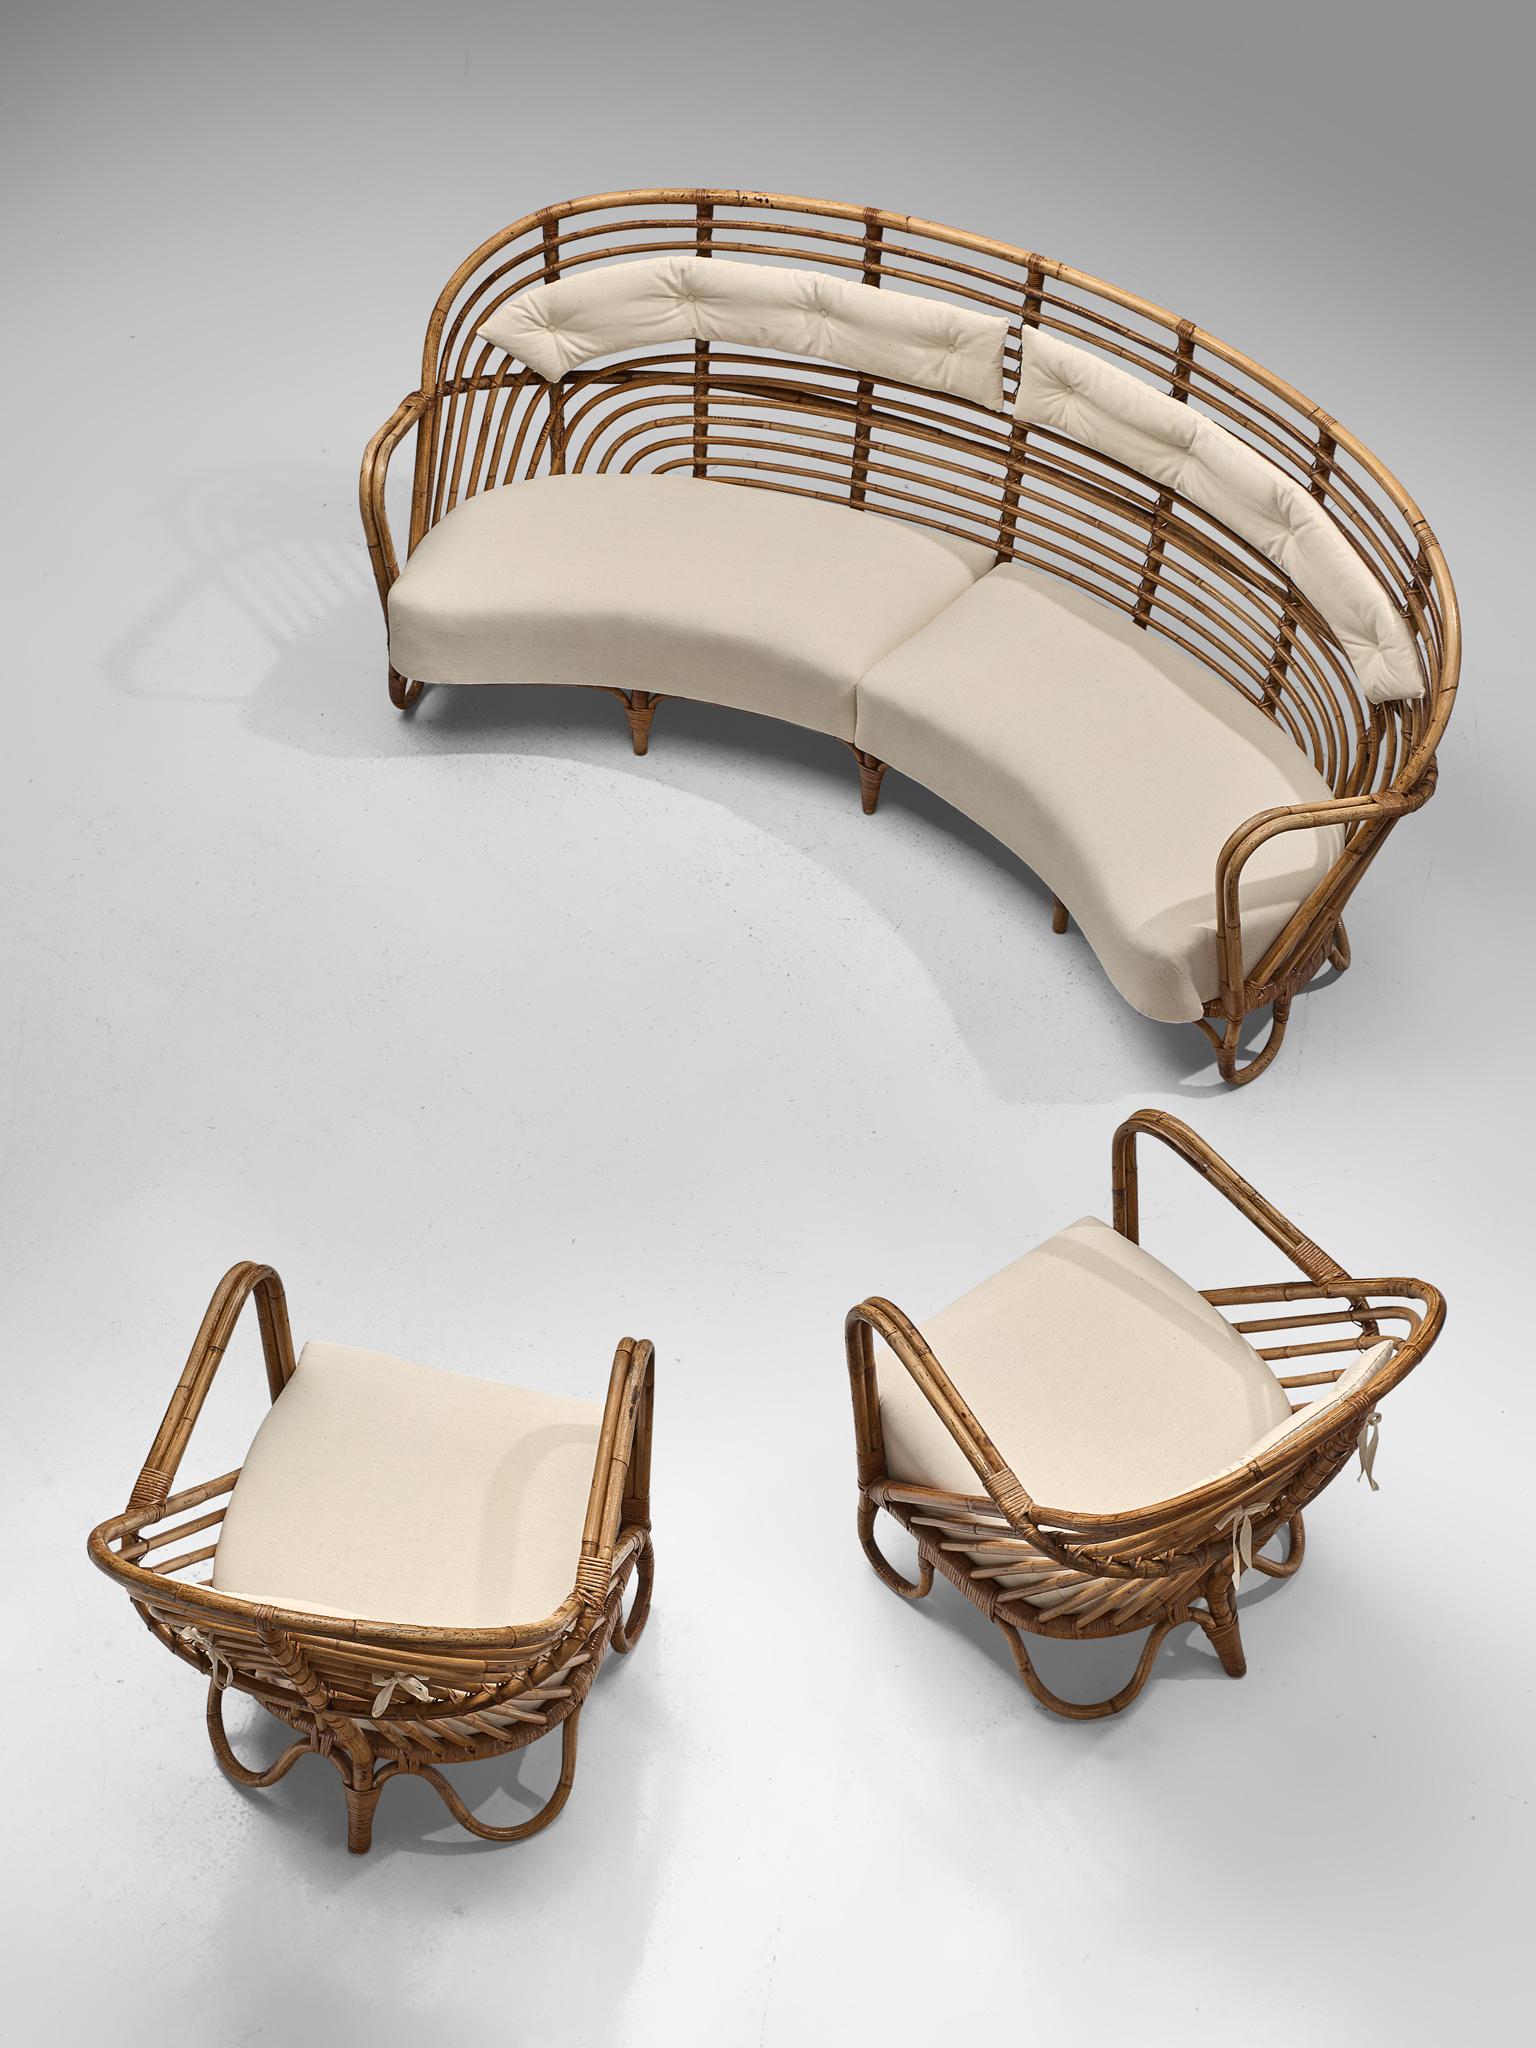 Danish Rattan Lounge Set with Eggshell White Upholstery, 1940s (Skandinavische Moderne)